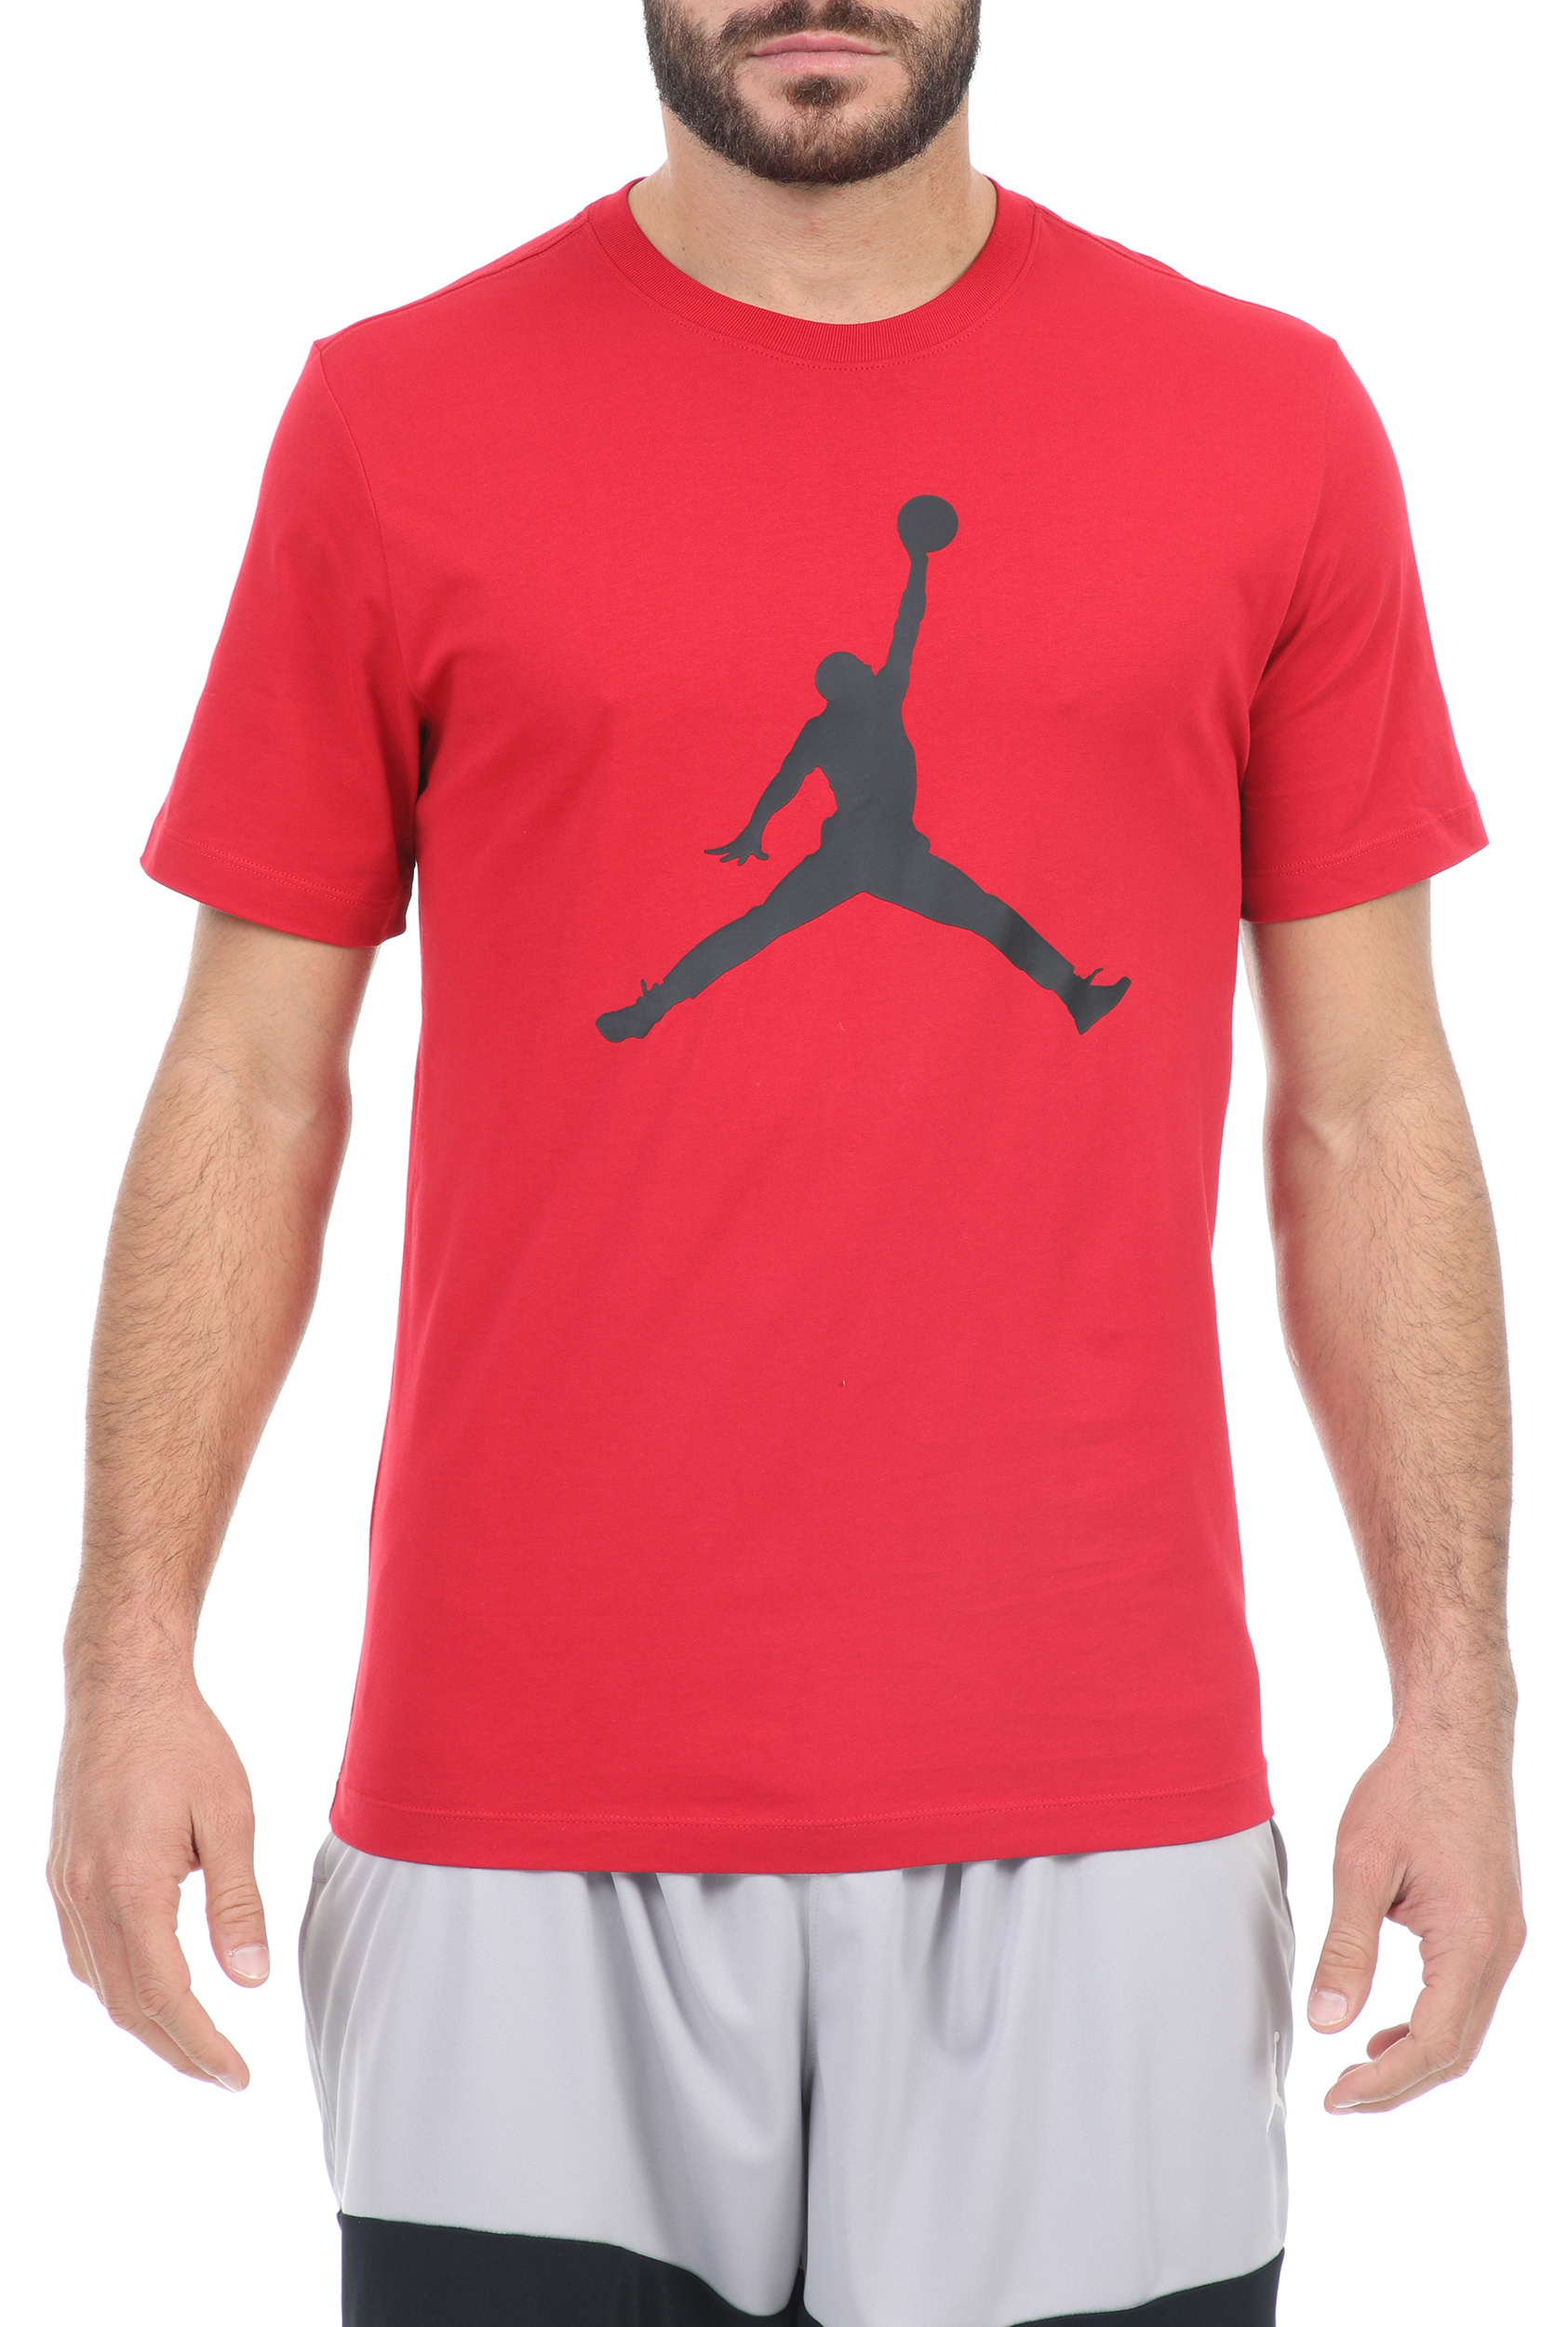 Ανδρικά/Ρούχα/Αθλητικά/T-shirt NIKE - Ανδρικό αθλητικό t-shirt ΝΙΚΕ M J JUMPMAN SS CREW κόκκινο